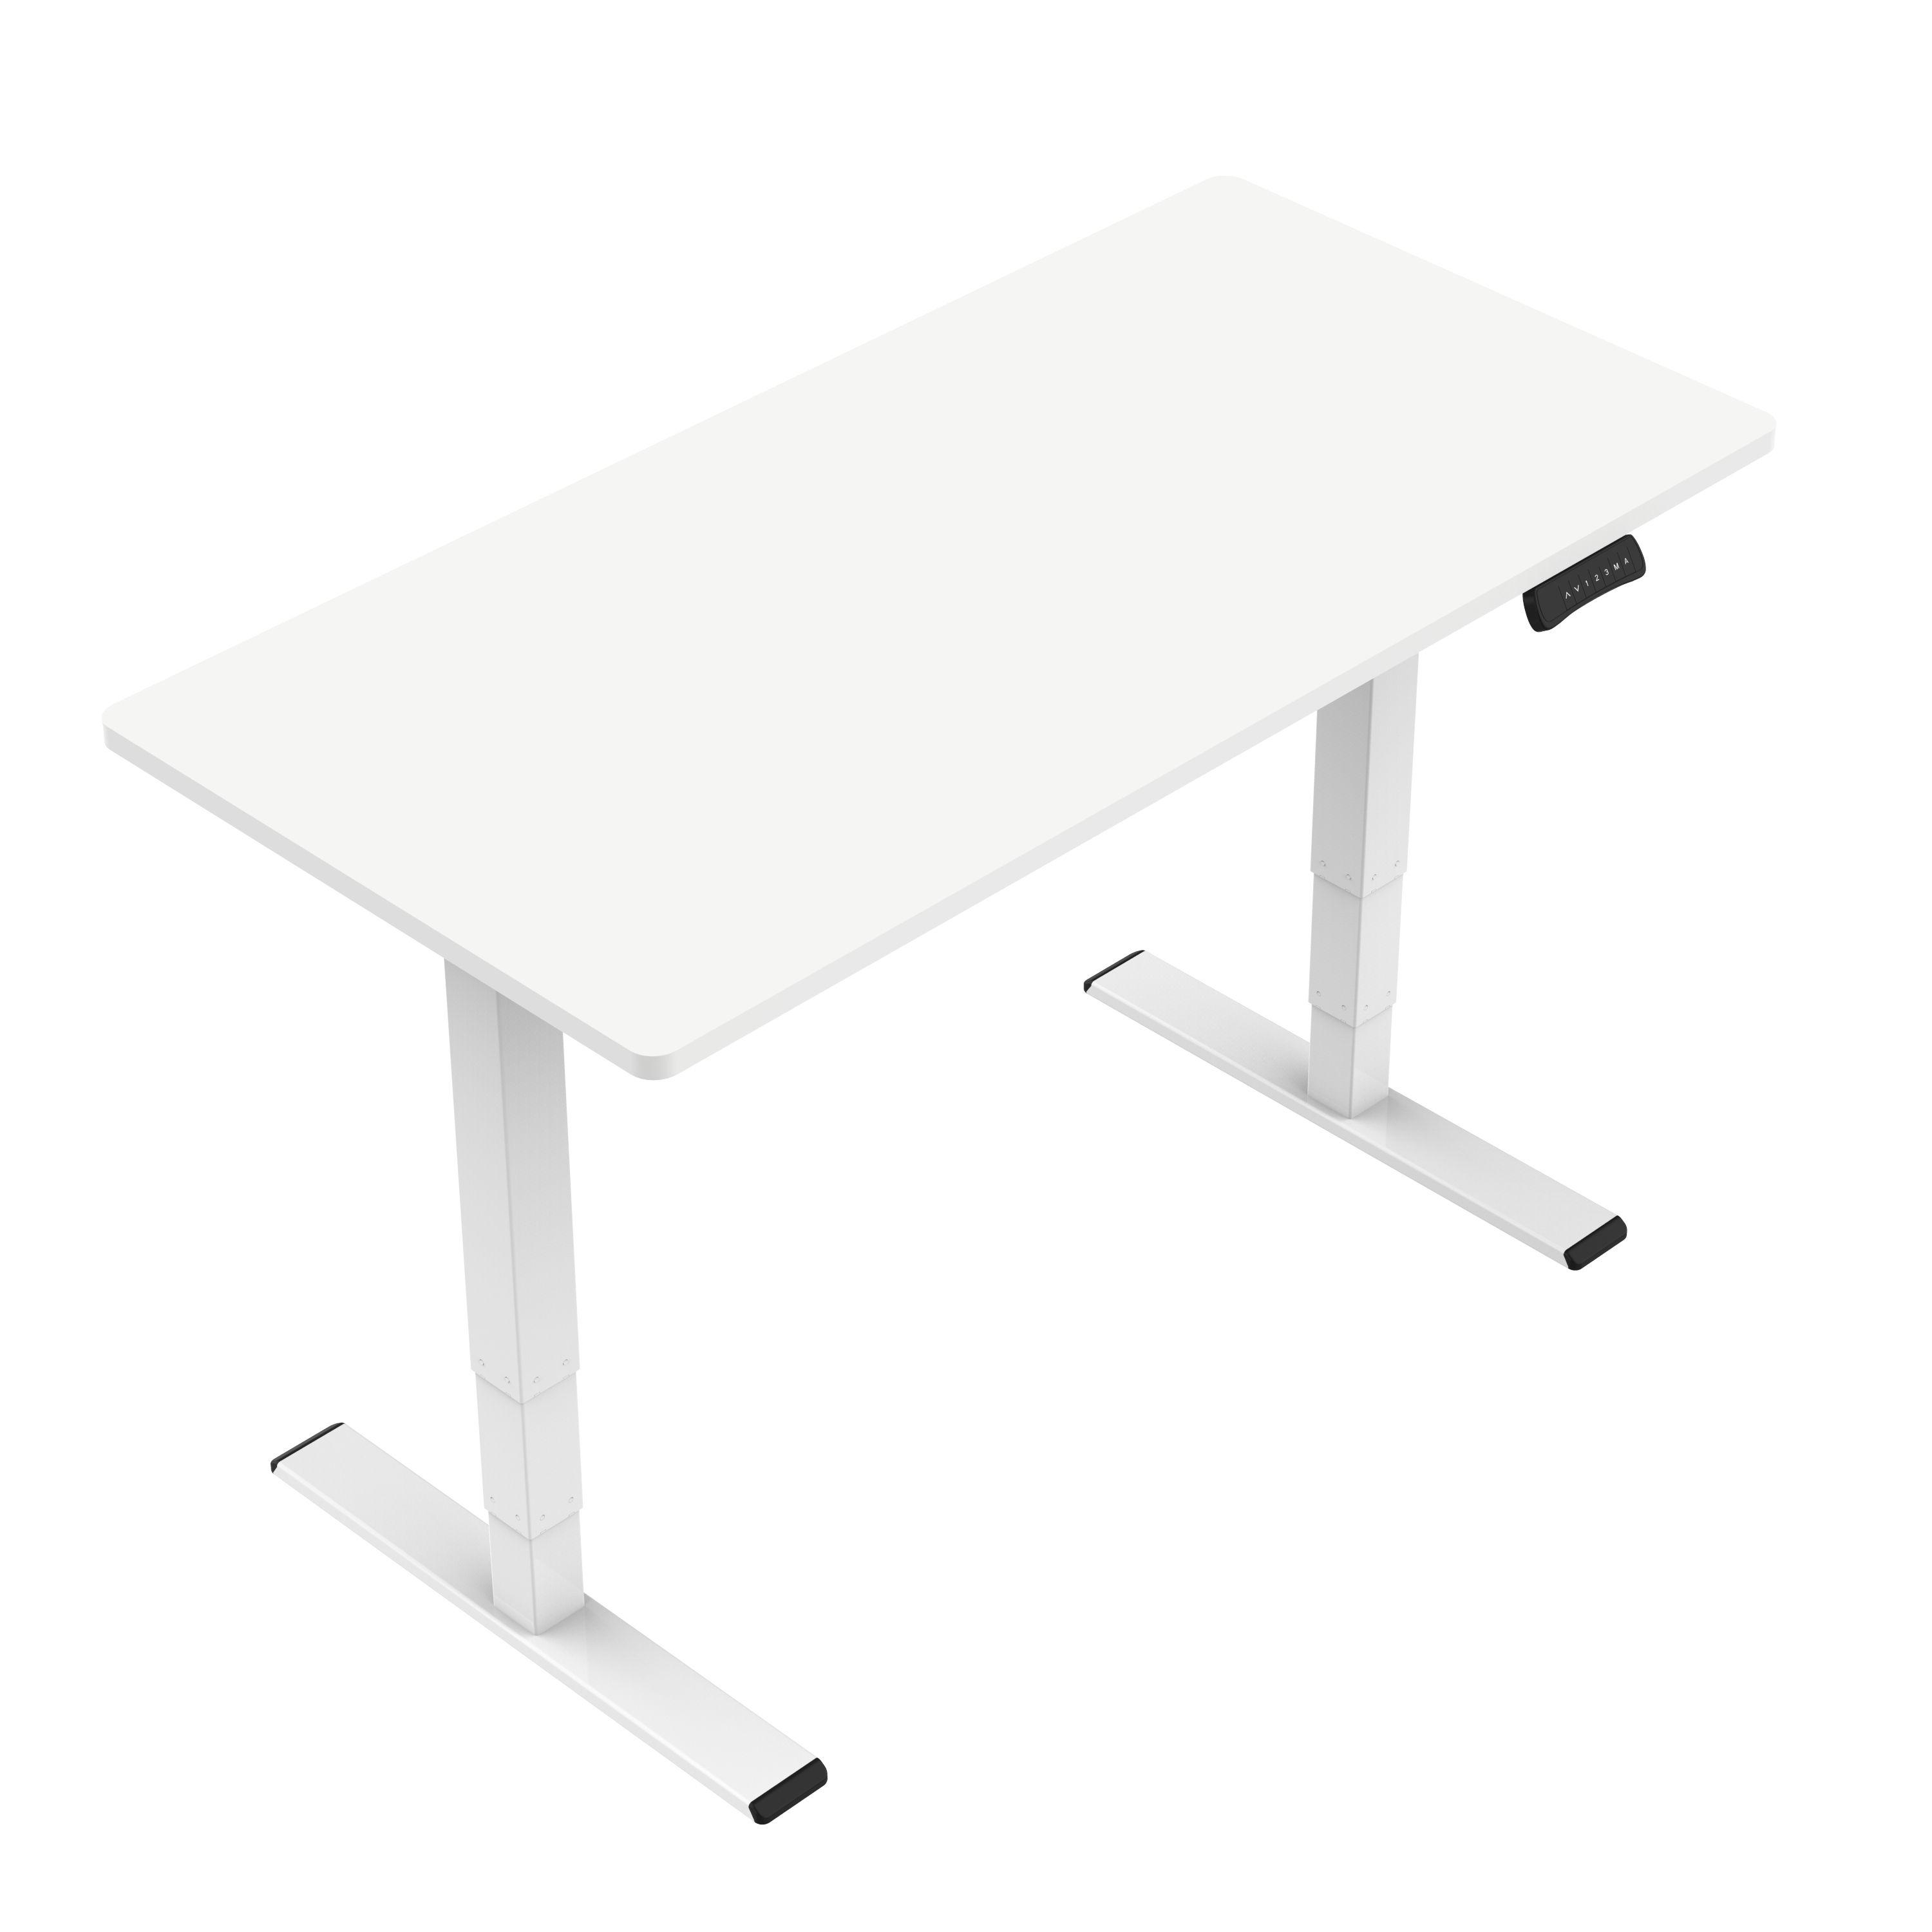 Tuckano ET225-W ergonomic standing desk frame white